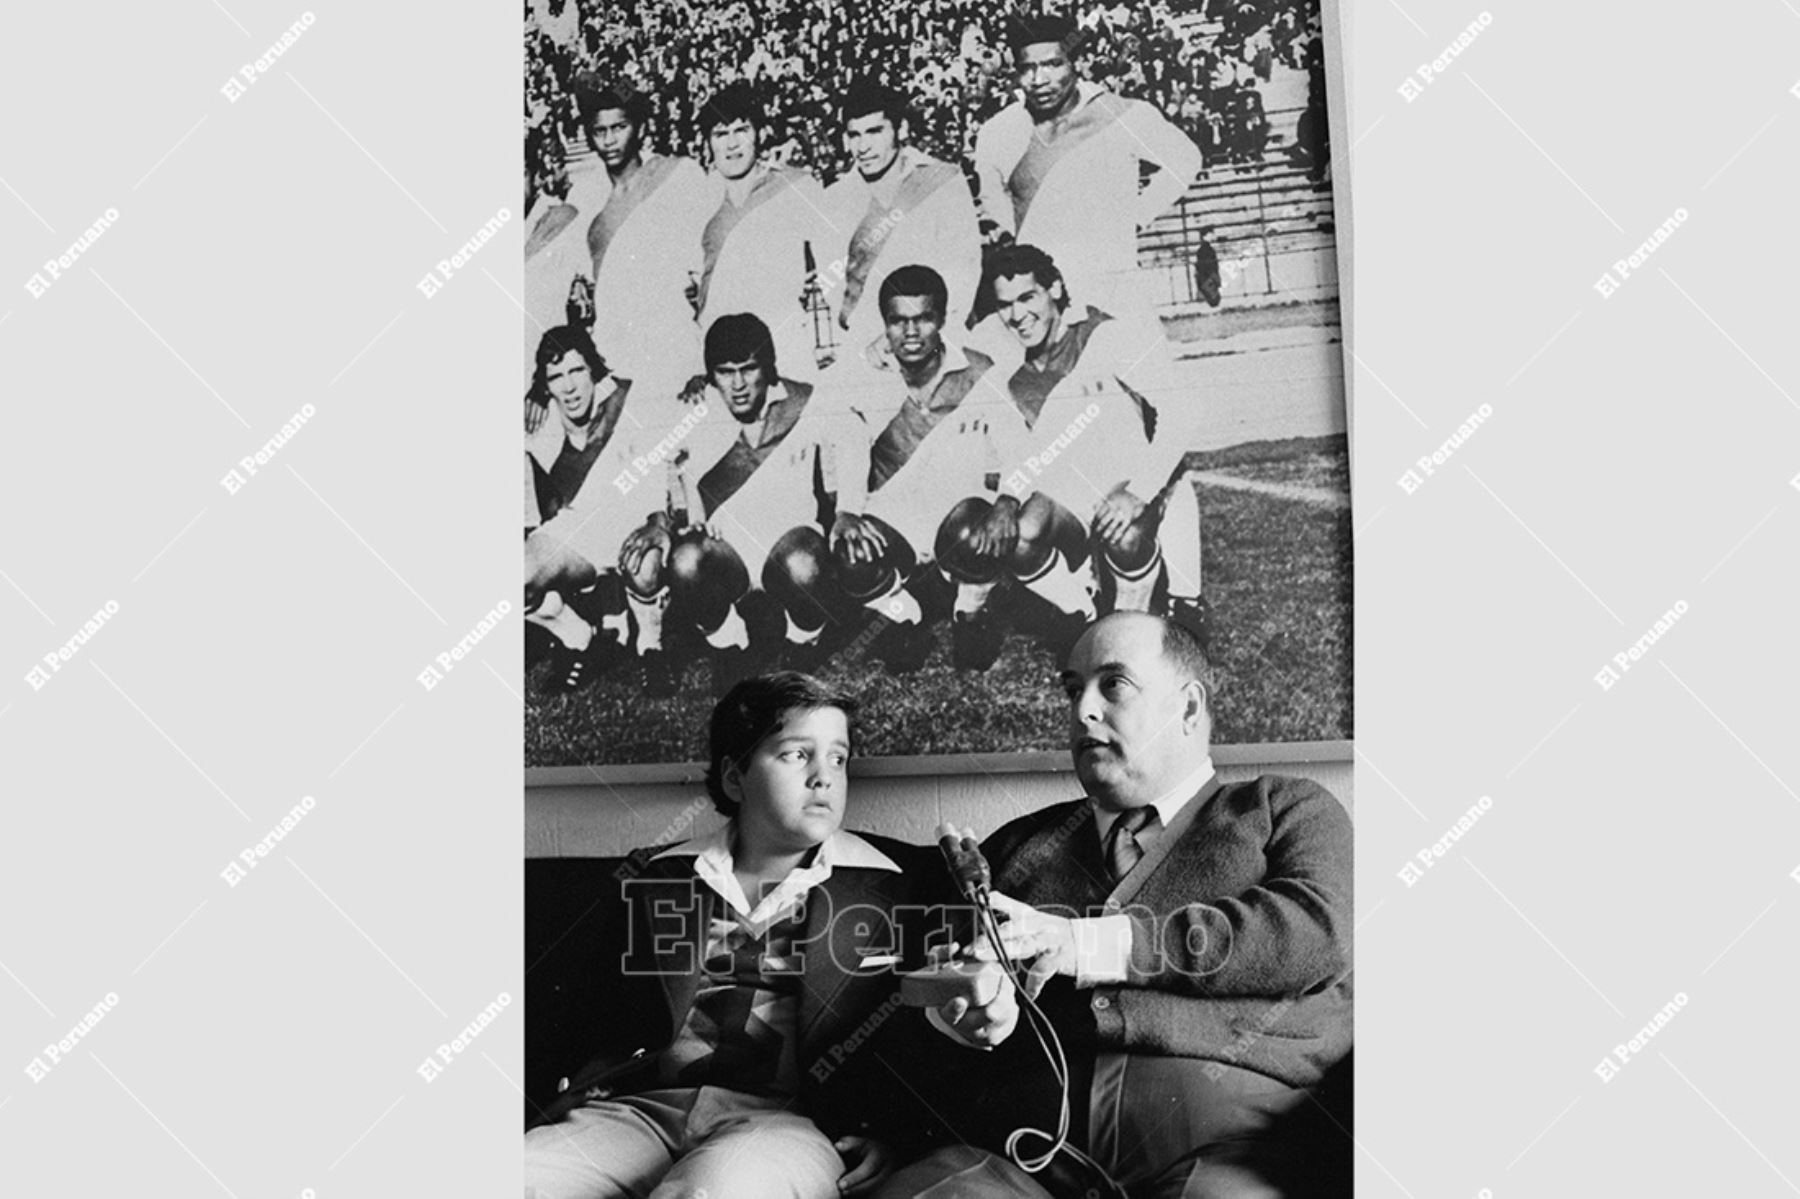 Lima - 8 setiembre 1979 / El periodista Alfonso "Pocho" Rospigliosi, director de Ovación, junto a su hijo Micky Rospigliosi Moyano. Foto: Archivo Histórico de El Peruano / Norman Córdova